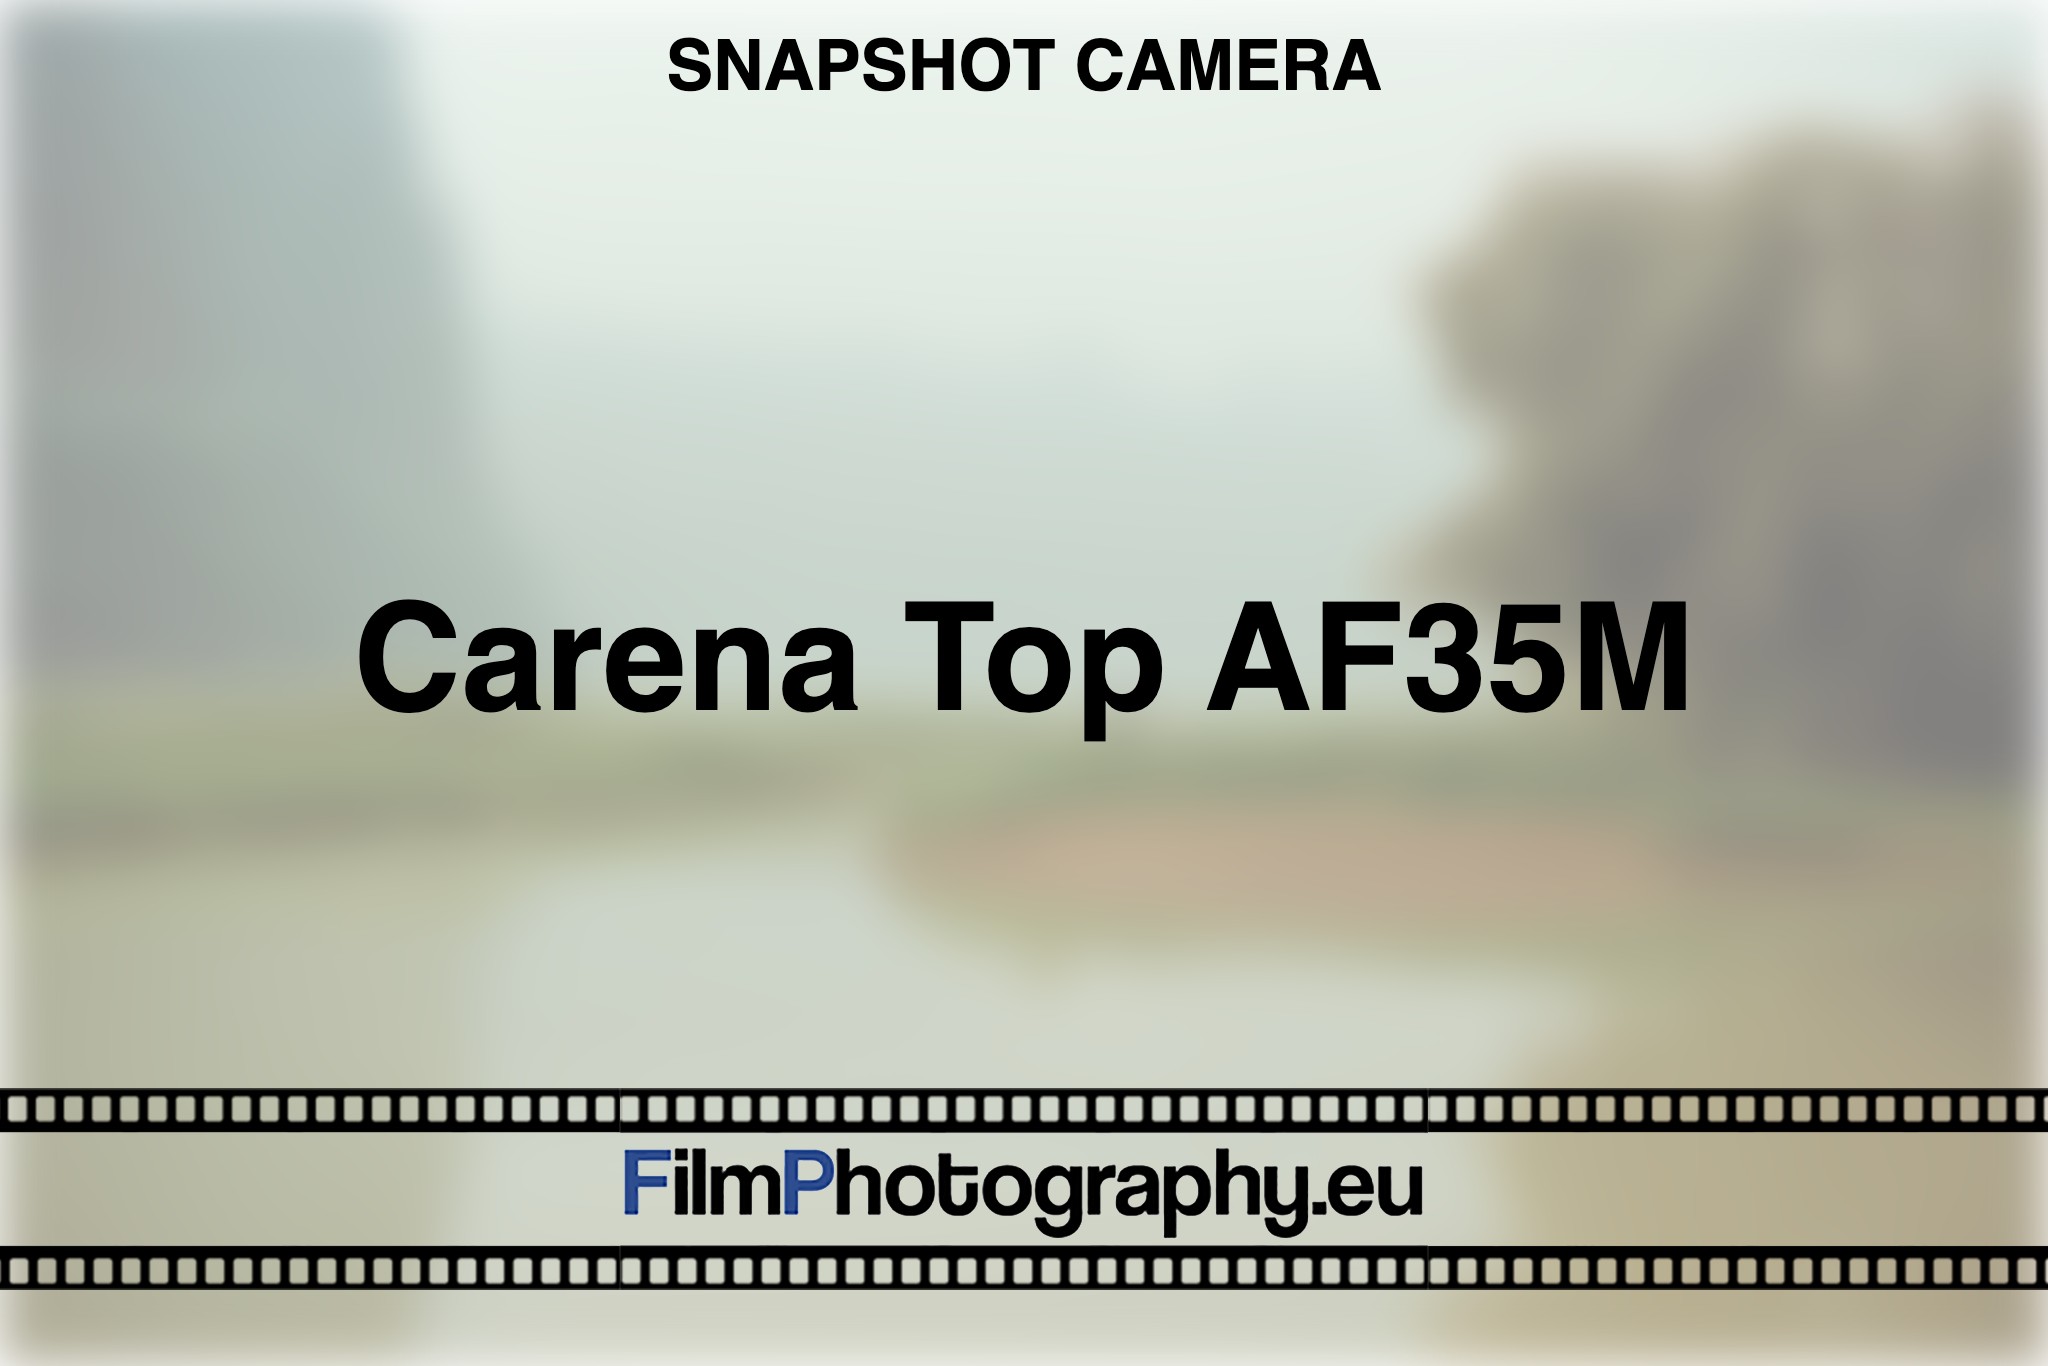 carena-top-af35m-snapshot-camera-bnv